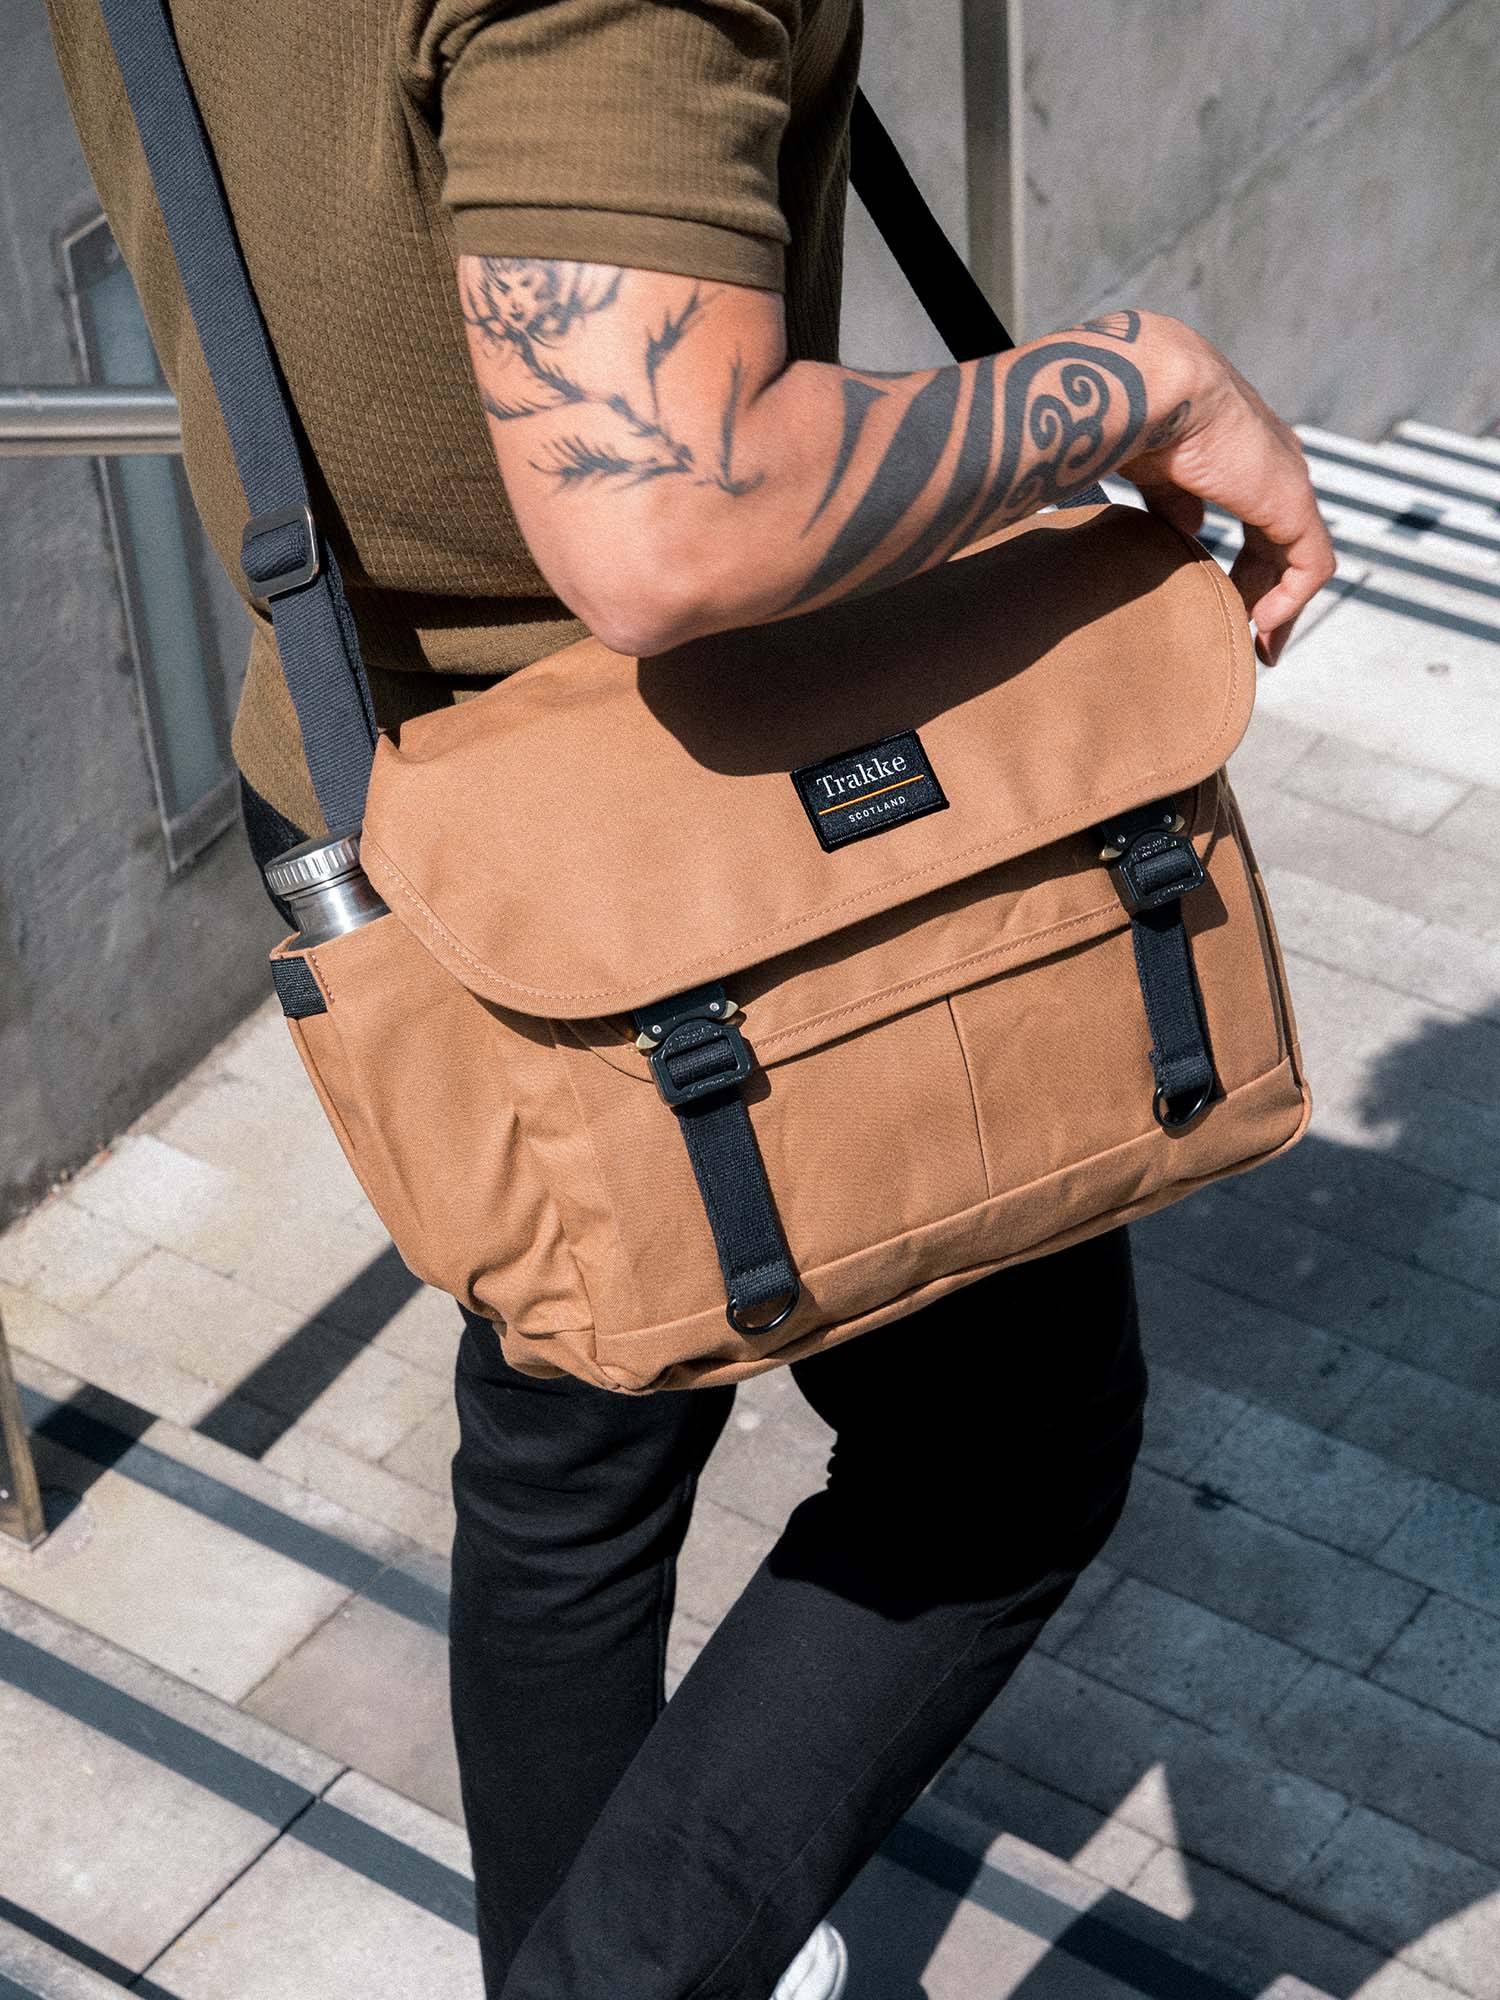 Bairn Pro Messenger Bag | Trakke - Handmade in Scotland